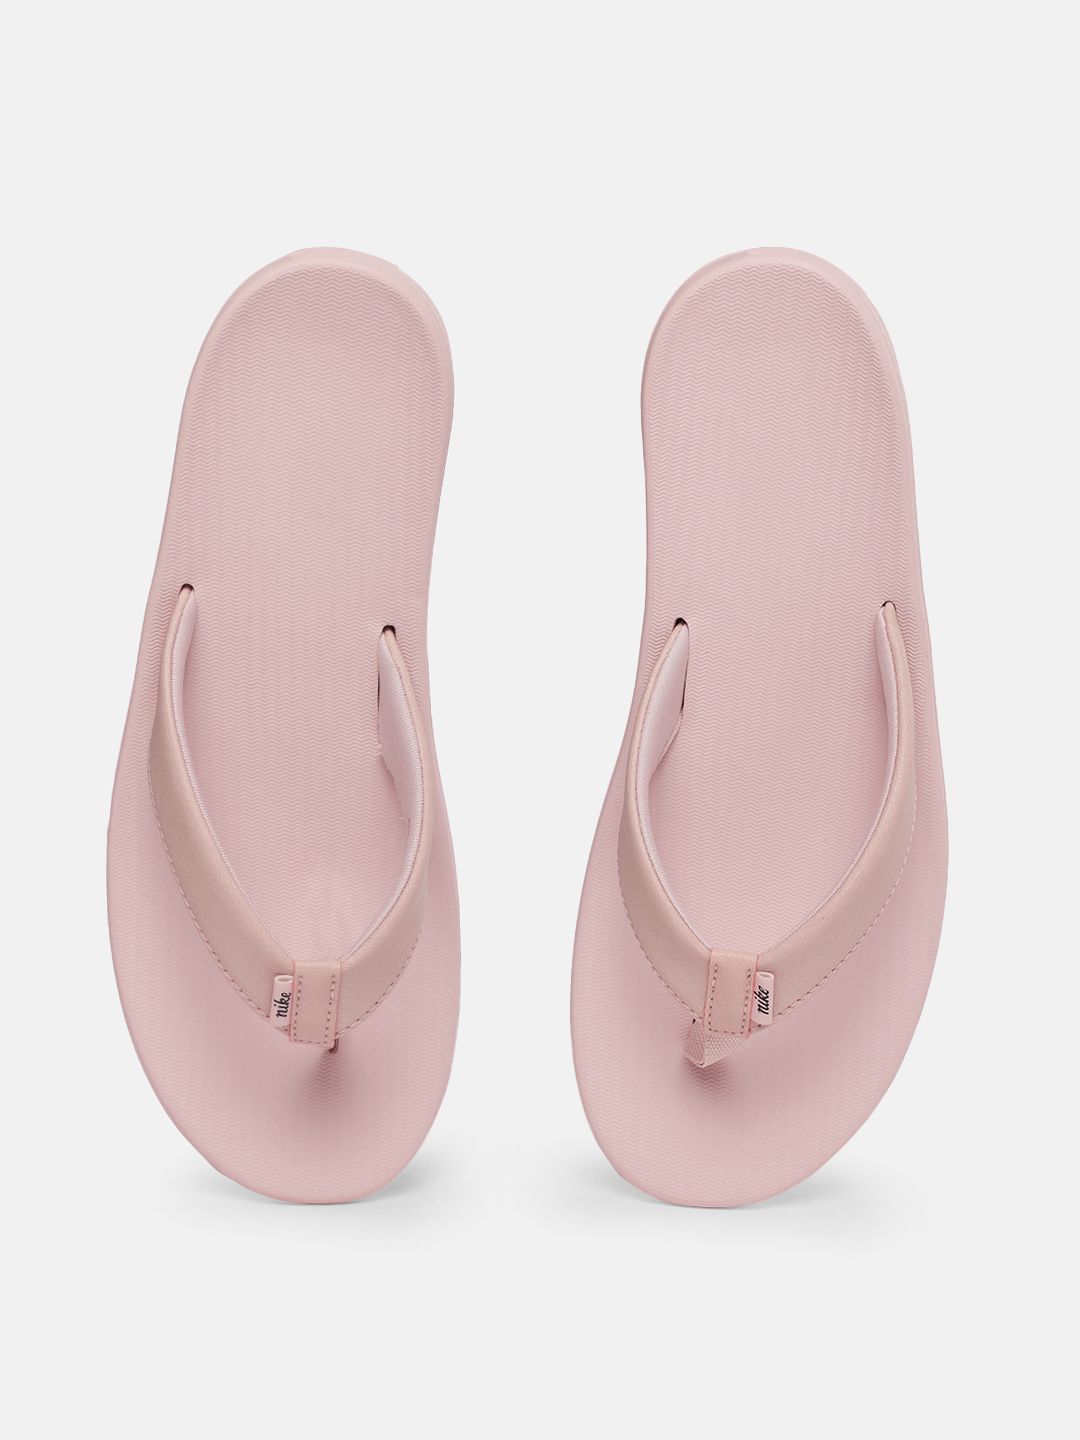 Nike Women Pink Thong Flip-Flops Price in India